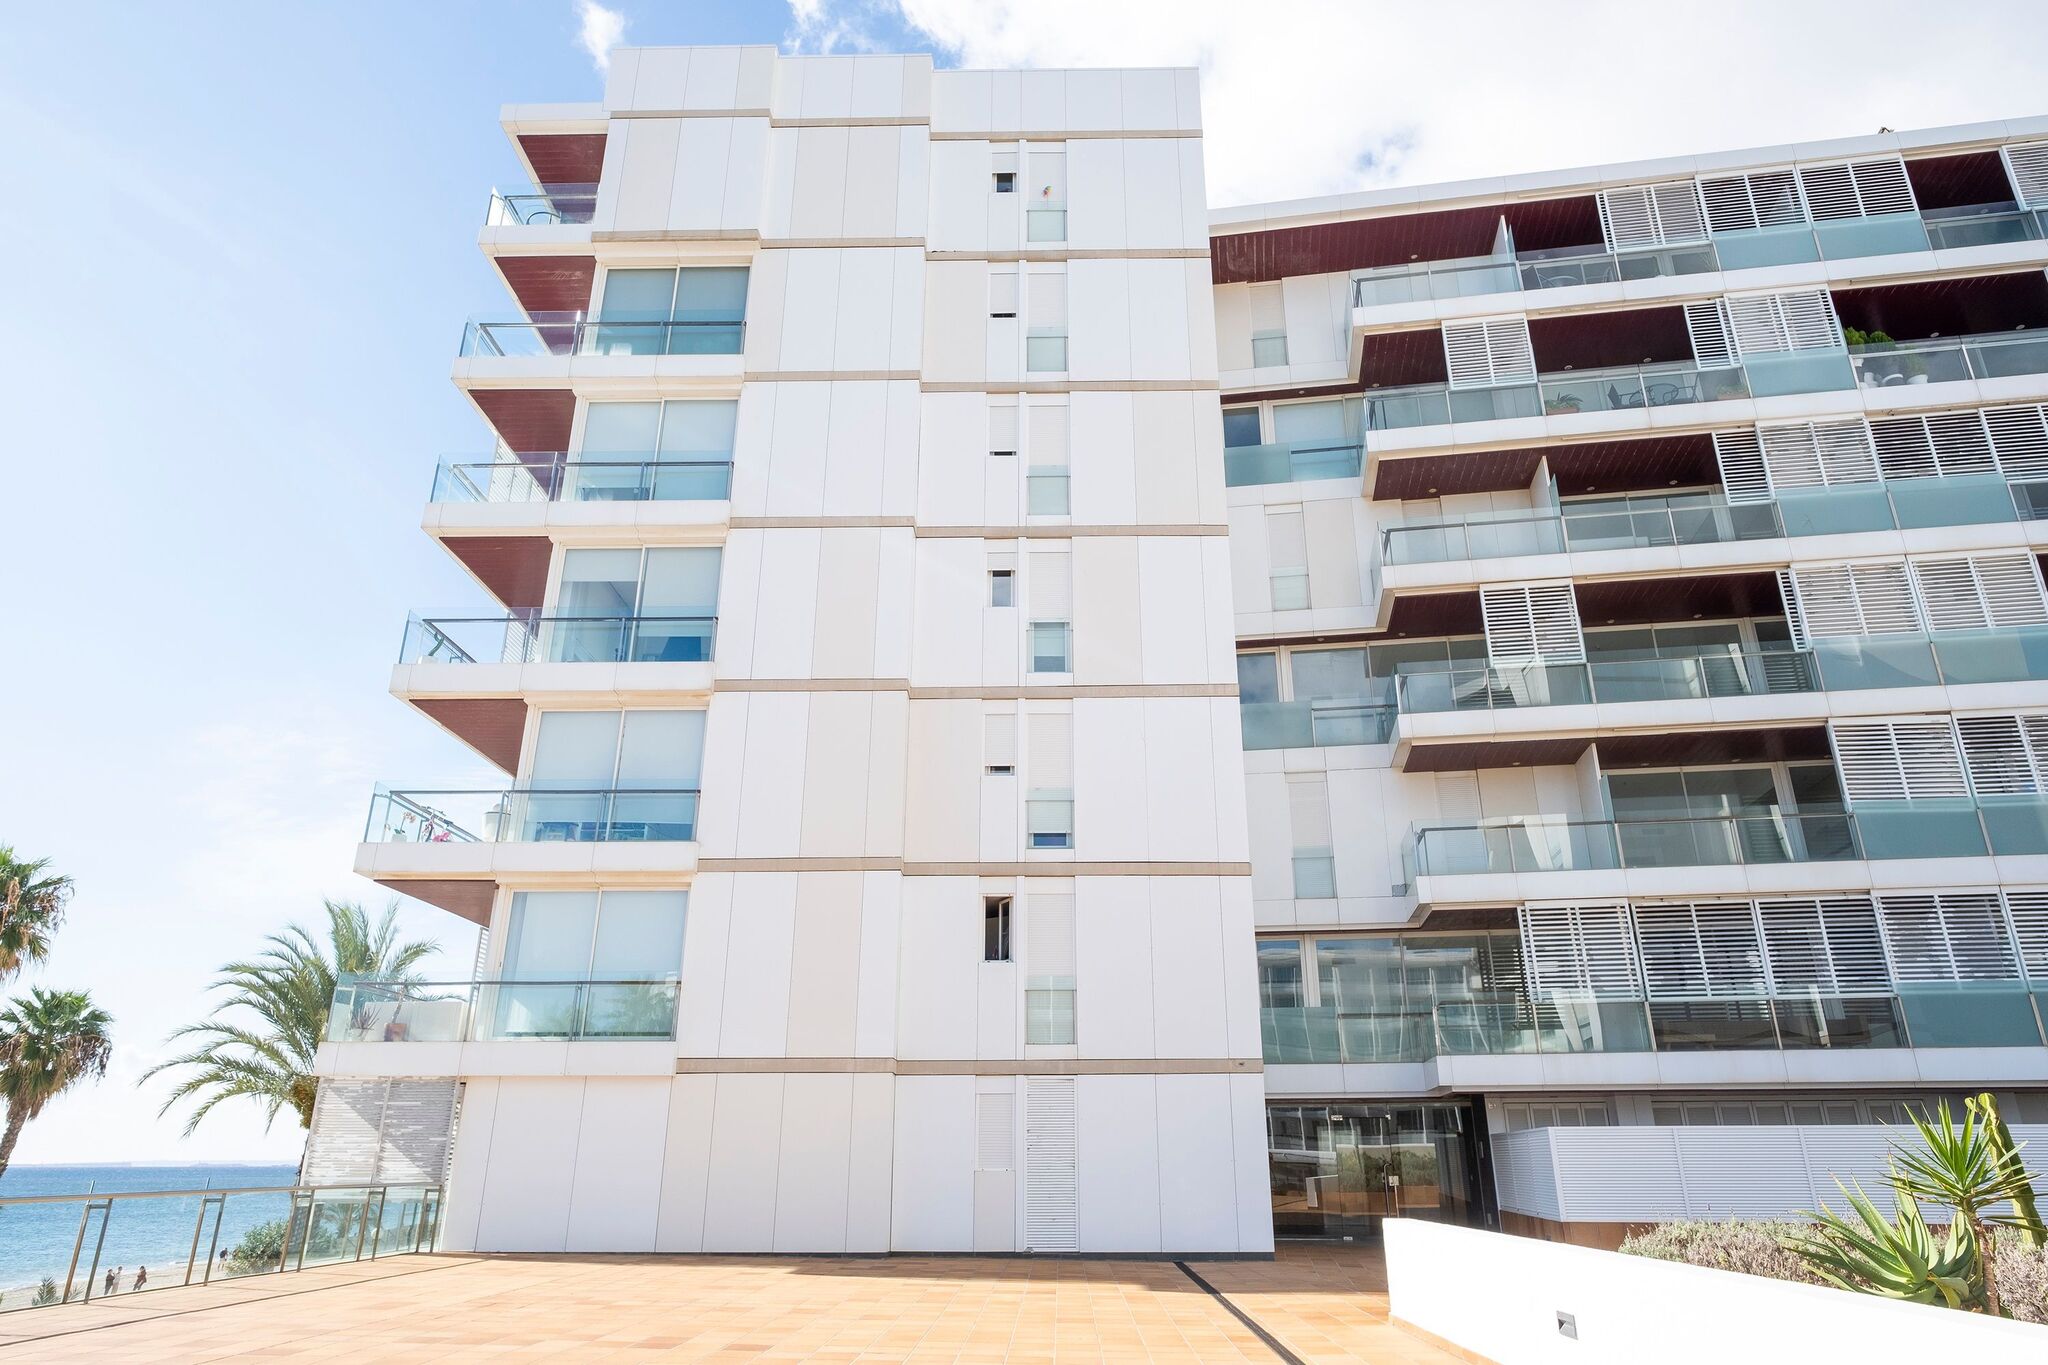 Charmantes Apartment in Ibiza-Stadion in der Nähe von Seabeach